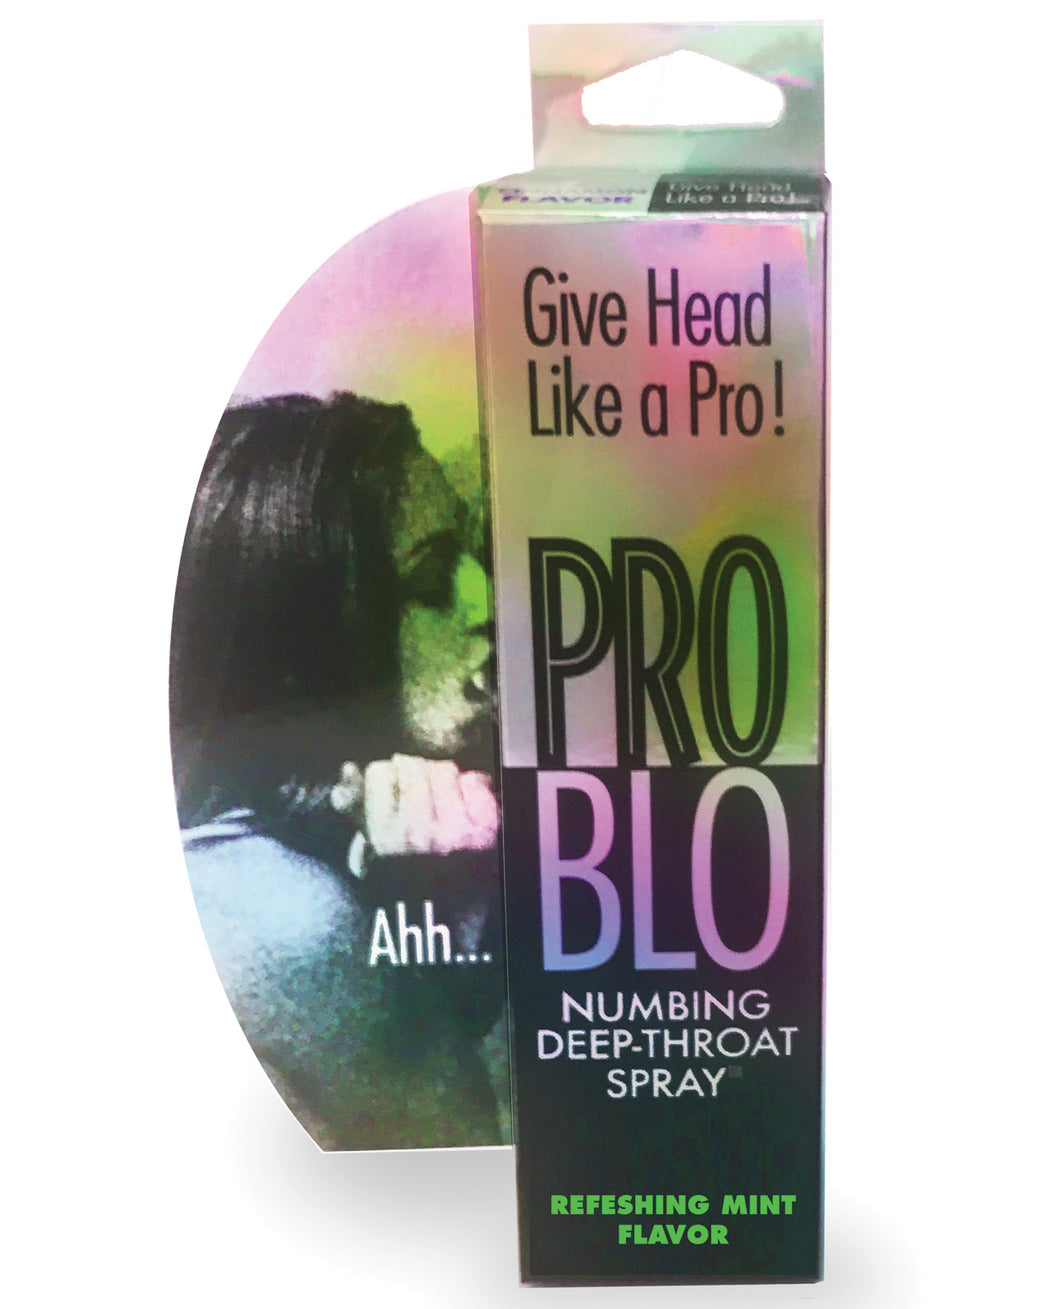 Problo Numbing Deep Throat Spray - Mint